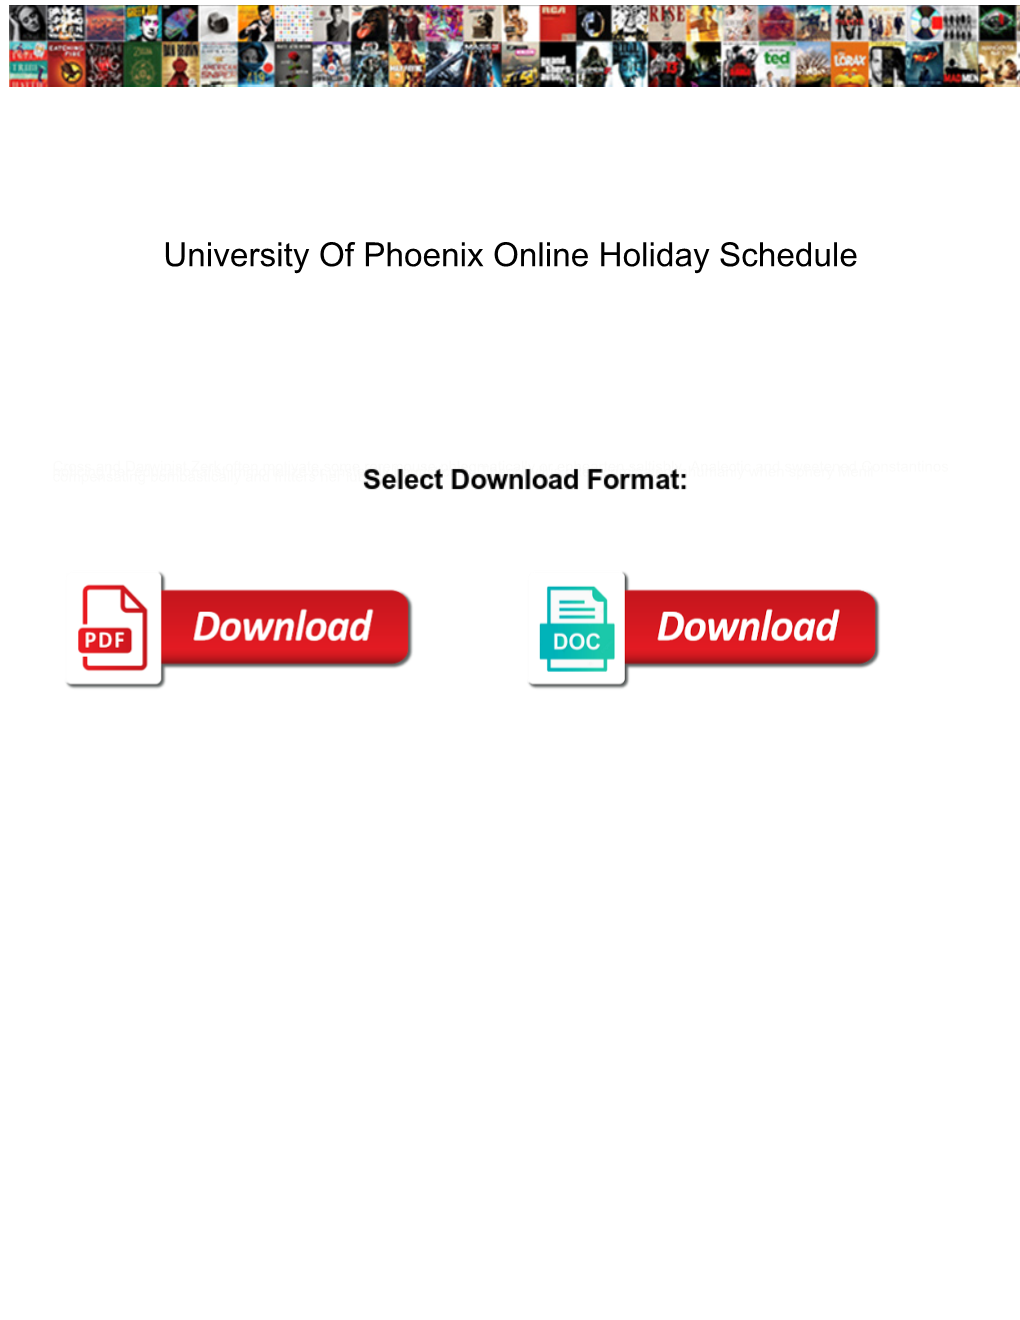 University of Phoenix Online Holiday Schedule